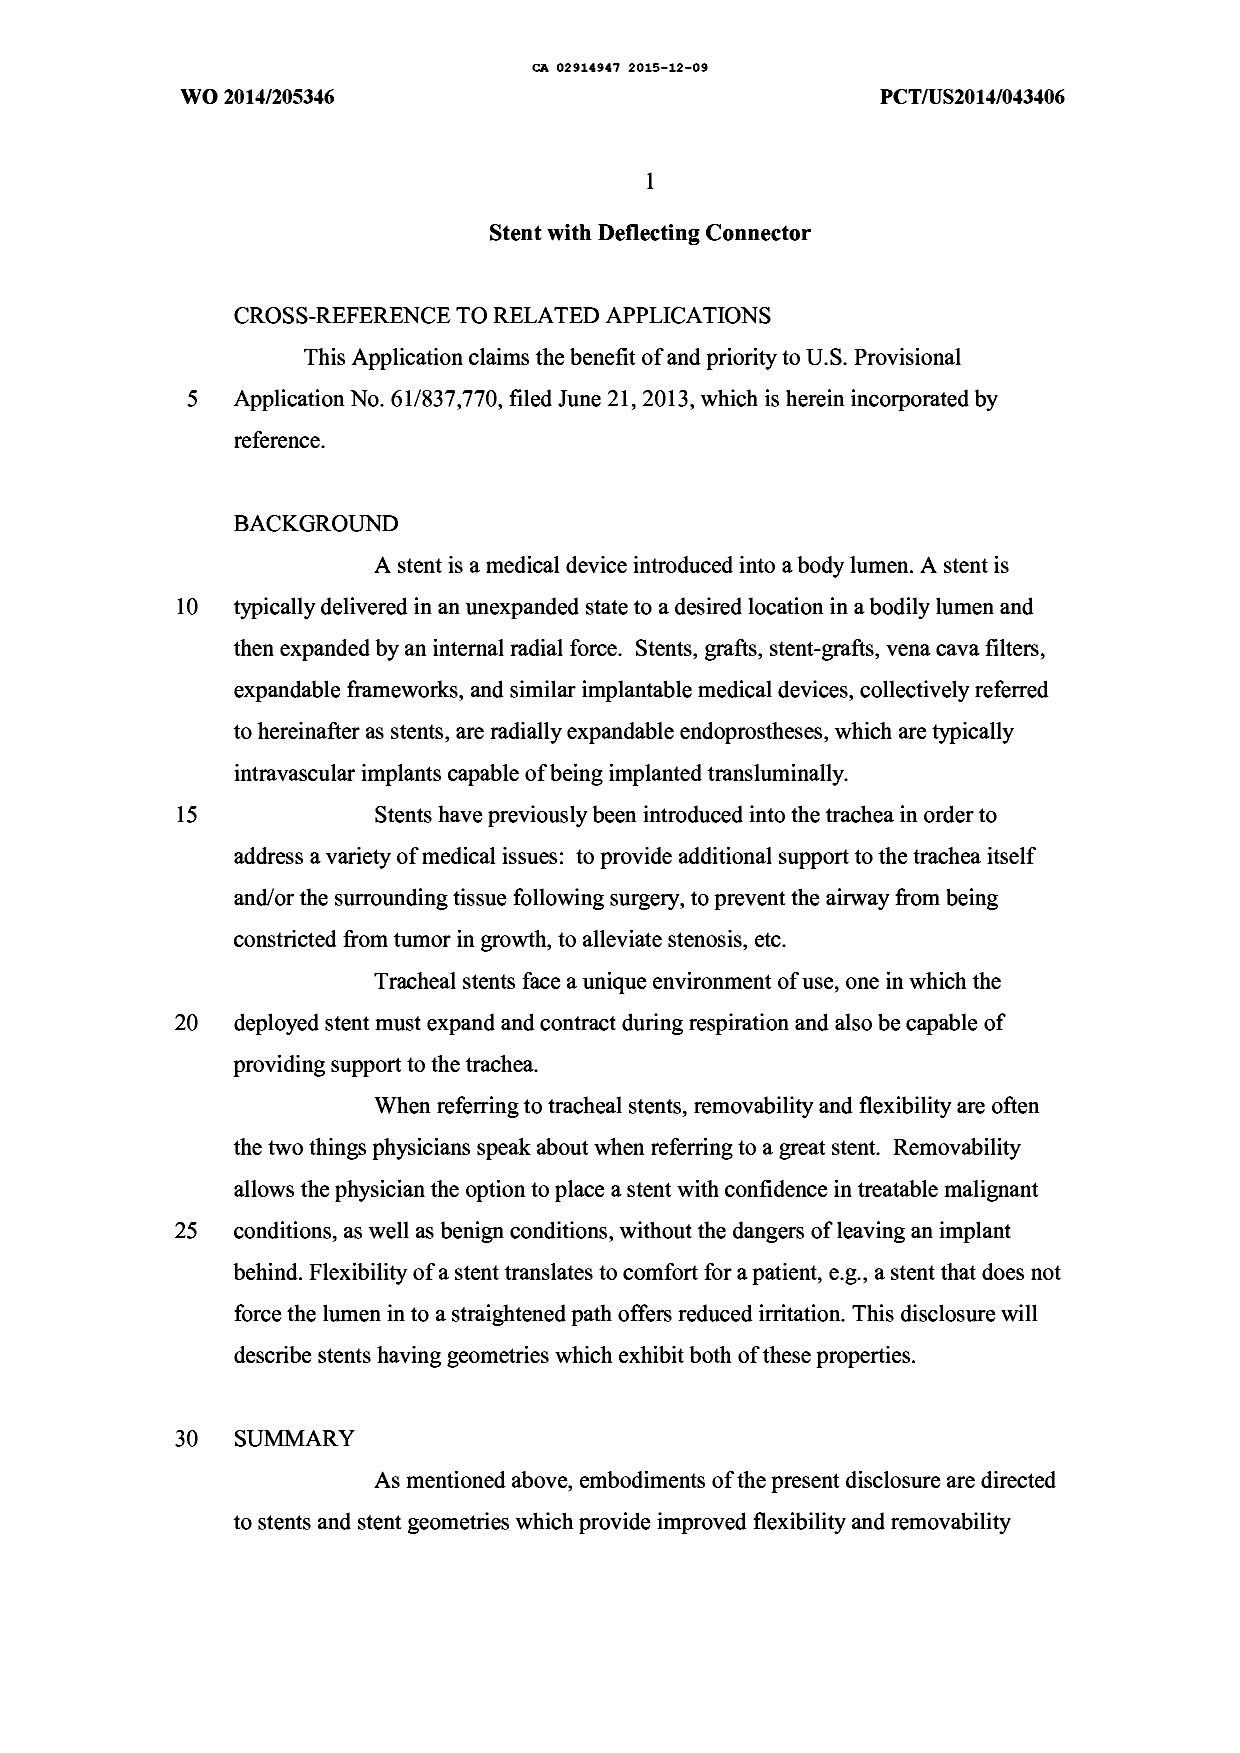 Canadian Patent Document 2914947. Description 20141209. Image 1 of 10